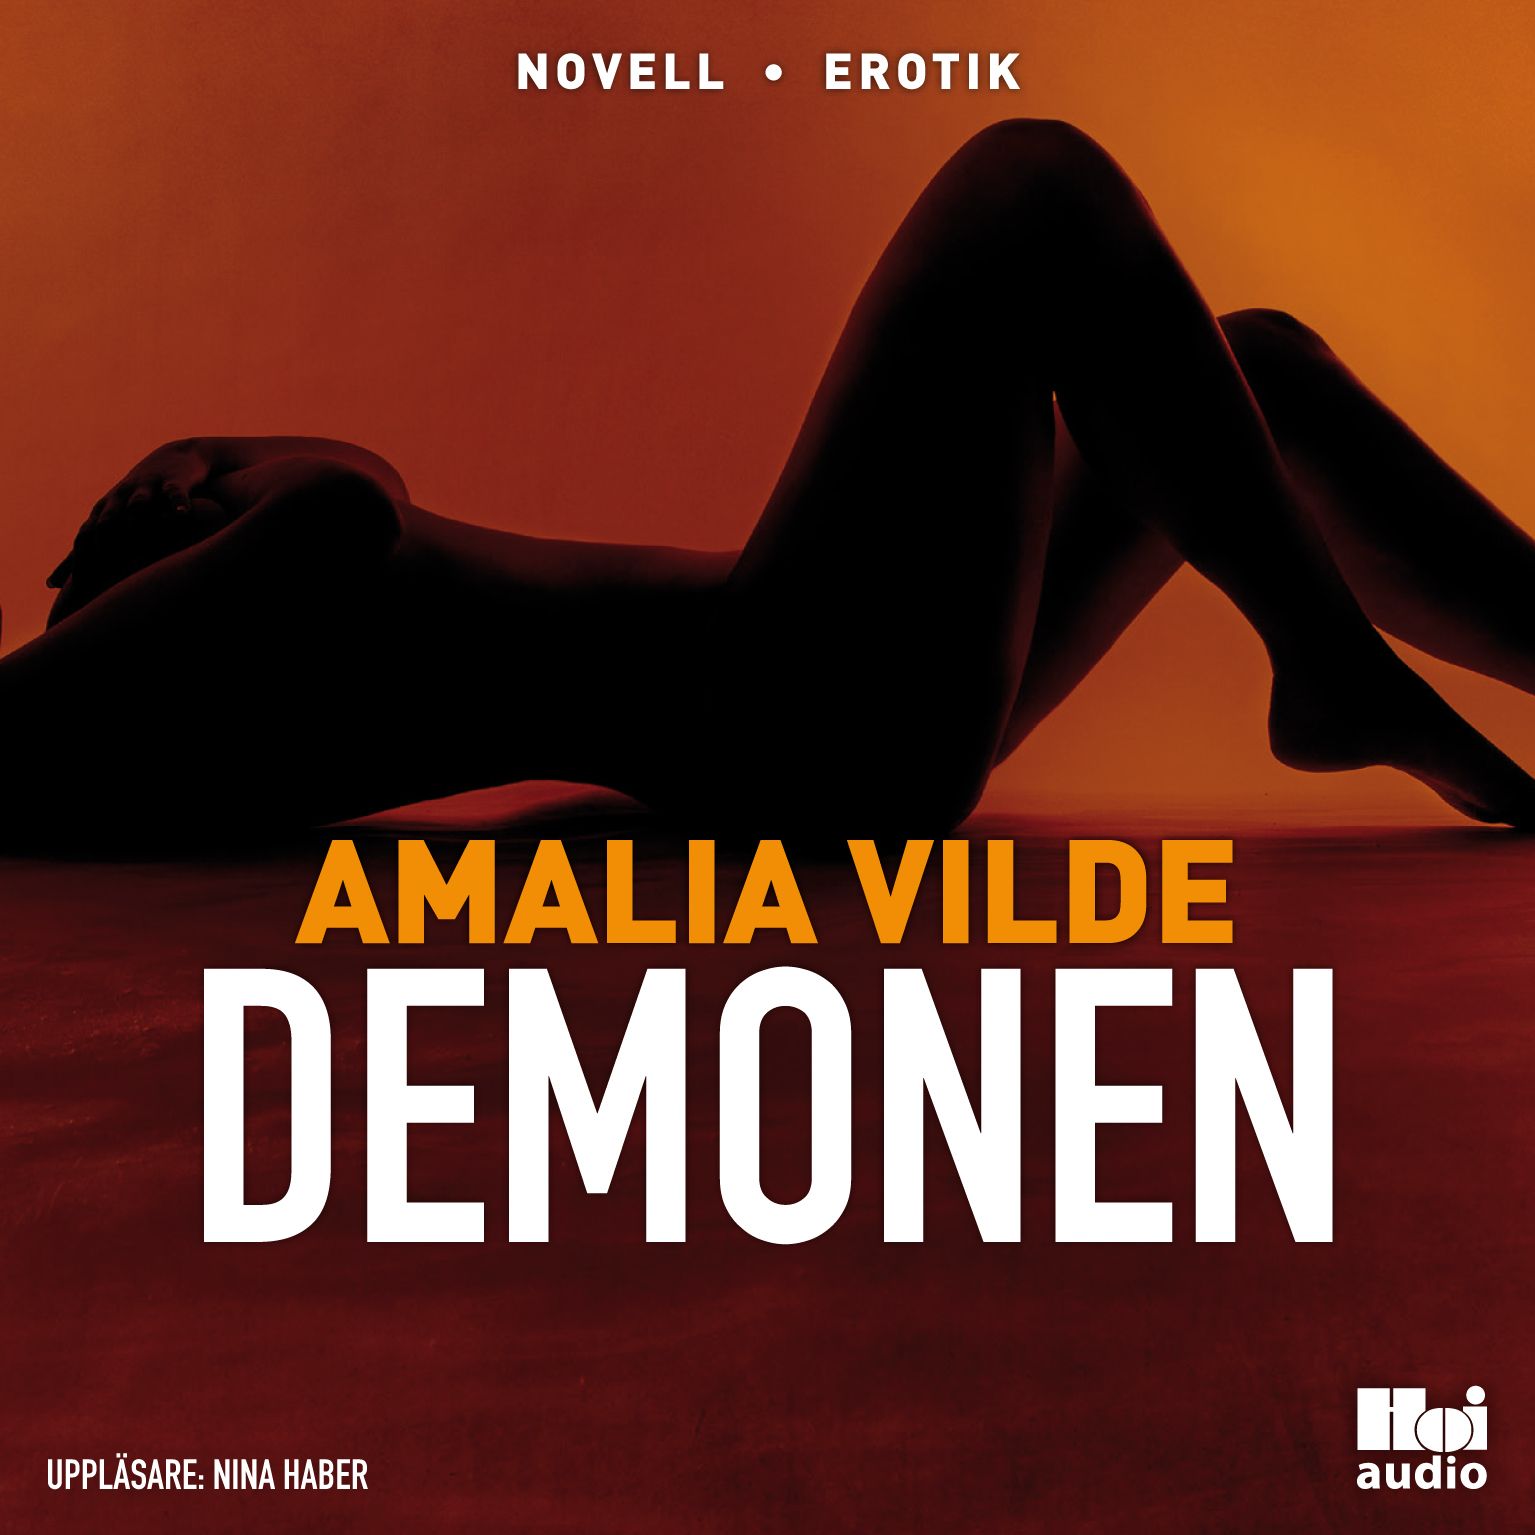 Demonen, audiobook by Amalia Vilde